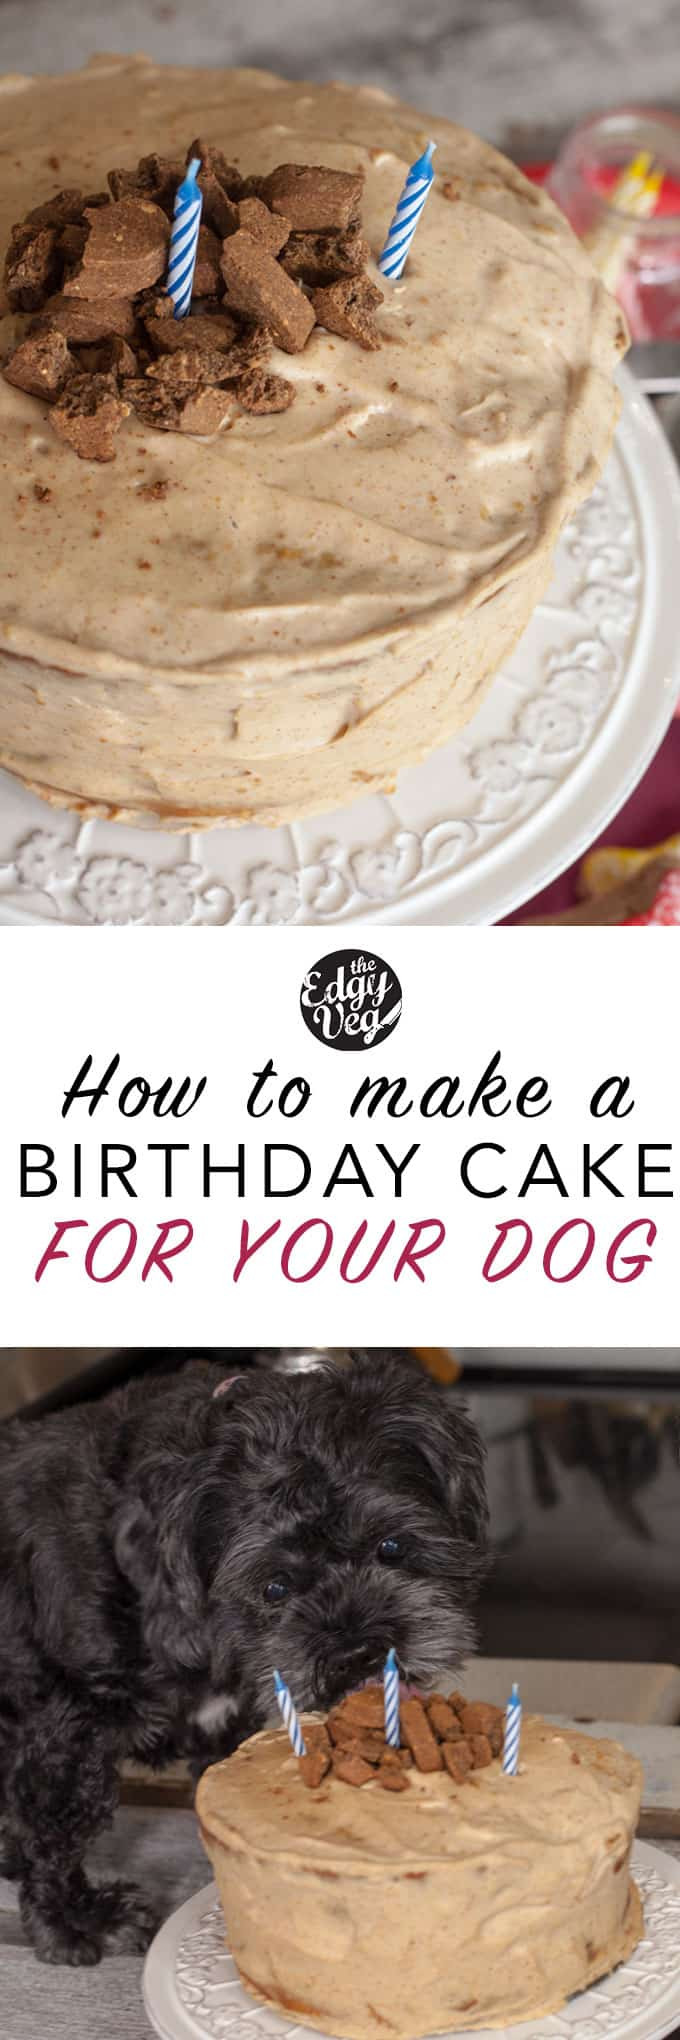 Dog Birthday Cake Recipe Grain Free
 Dog Friendly Birthday Cake